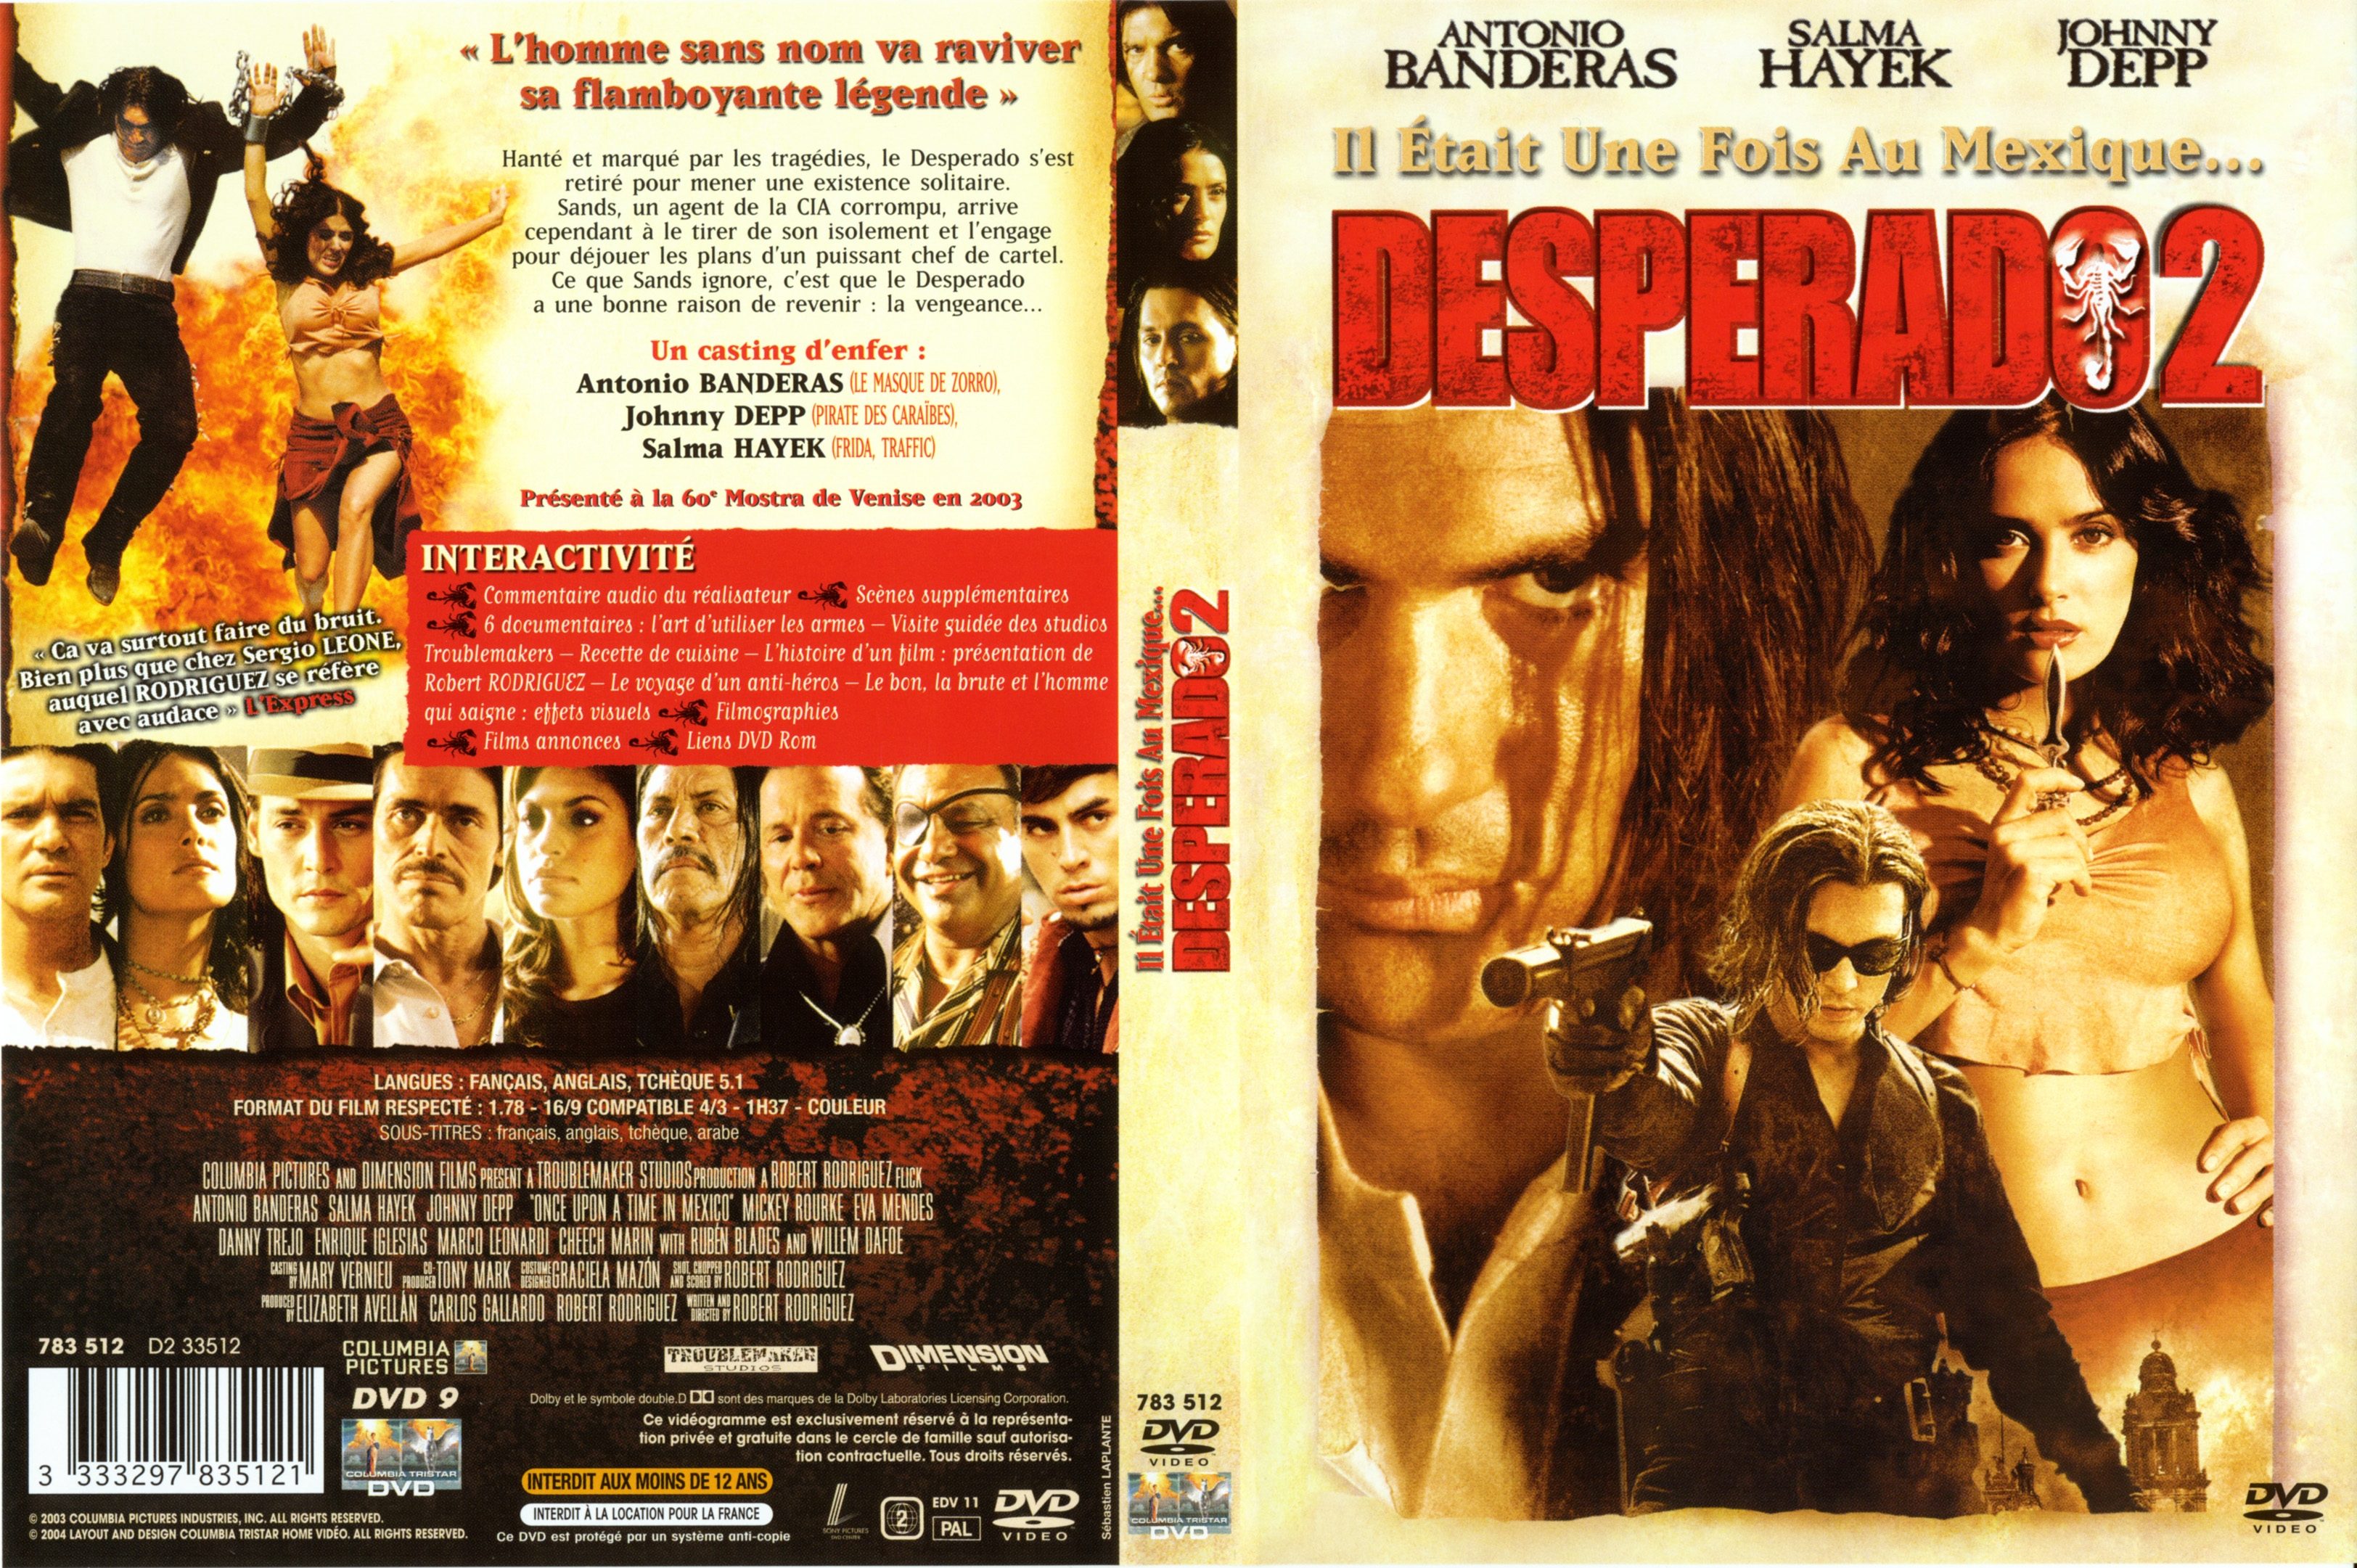 Jaquette DVD Desperado 2